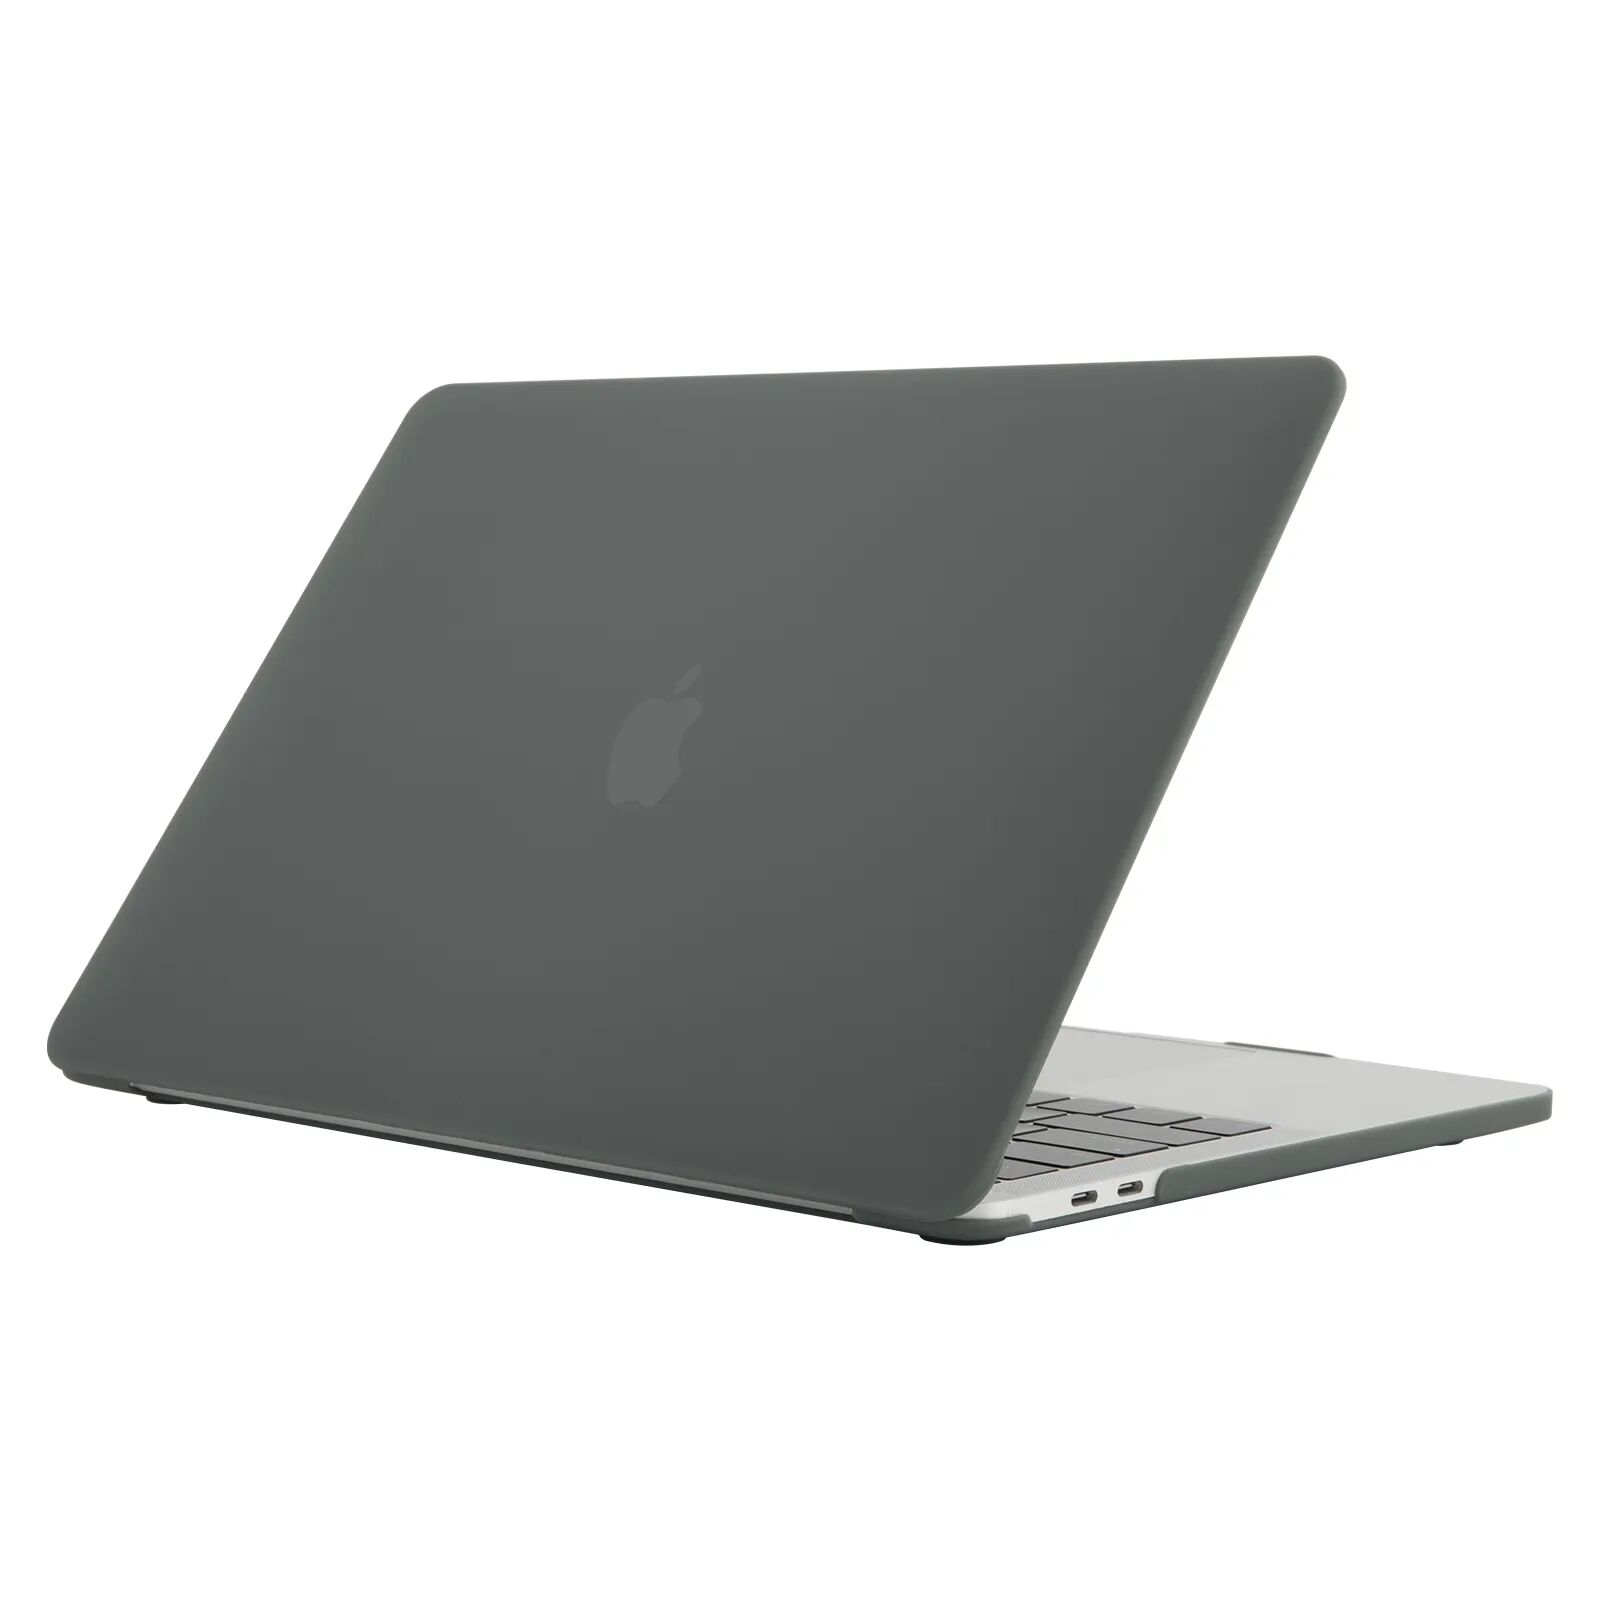 iPouzdro.cz Ochranný kryt na MacBook 12 - Matte Black